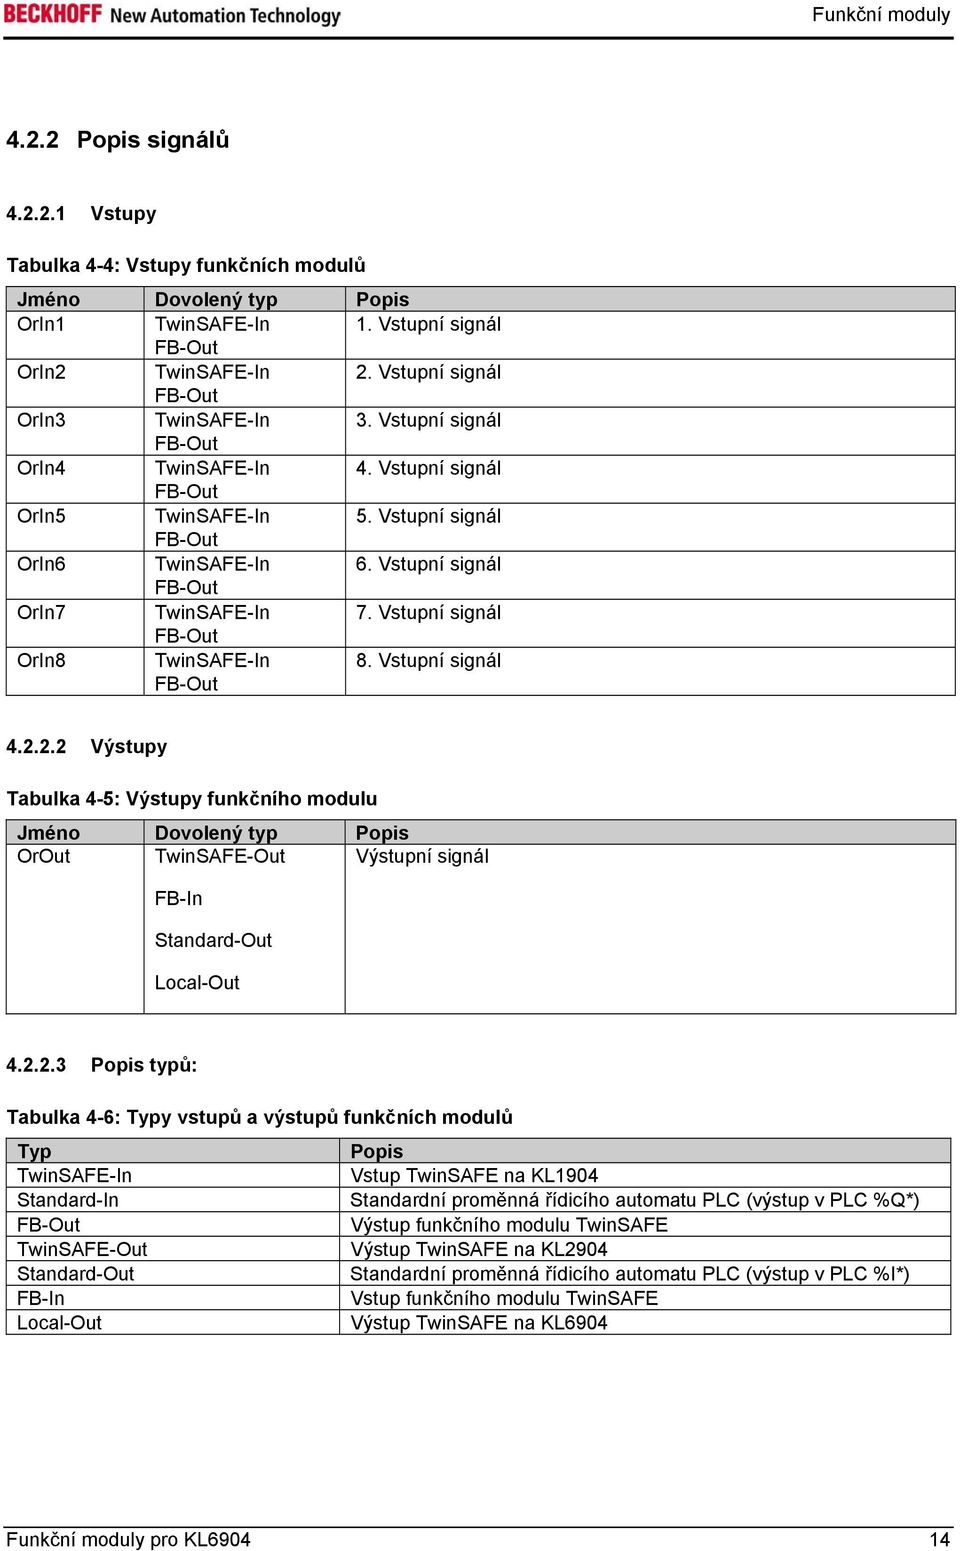 2.2 Výstupy Tabulka 4-5: Výstupy funkčního modulu Jméno Dovolený typ Popis OrOut TwinSAFE-Out Výstupní signál 4.2.2.3 Popis typů: Tabulka 4-6: Typy vstupů a výstupů funkčních modulů Typ Popis Vstup